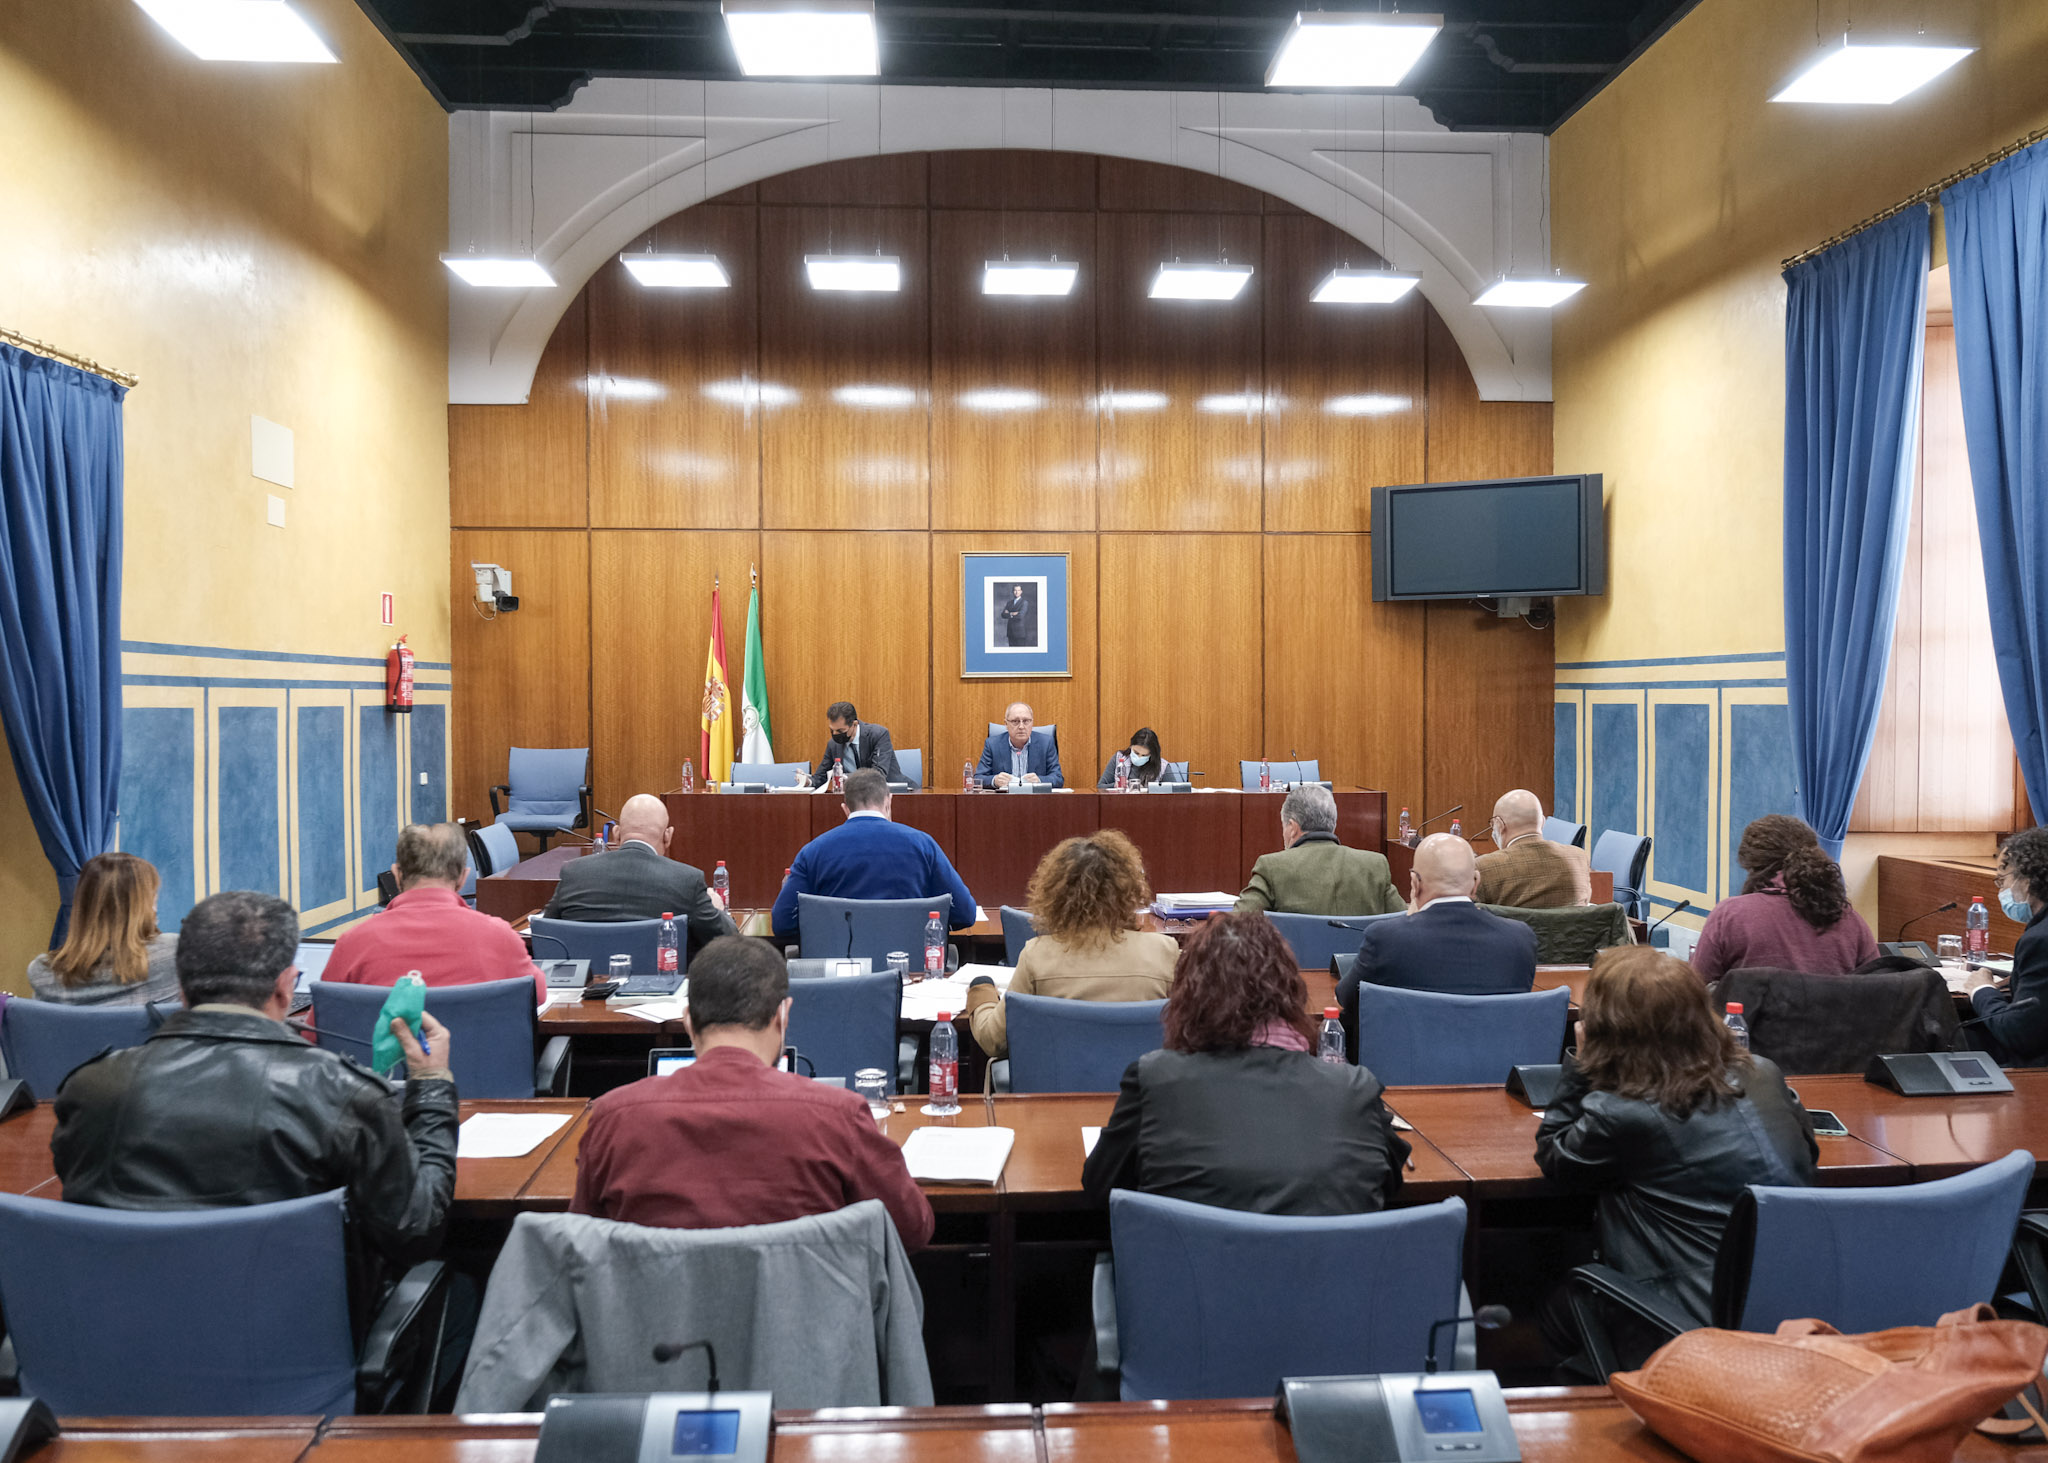  La Comisin de Fomento debate el dictamen al Proyecto de Ley de Impulso para la Sostenibilidad del Territorio de Andaluca  